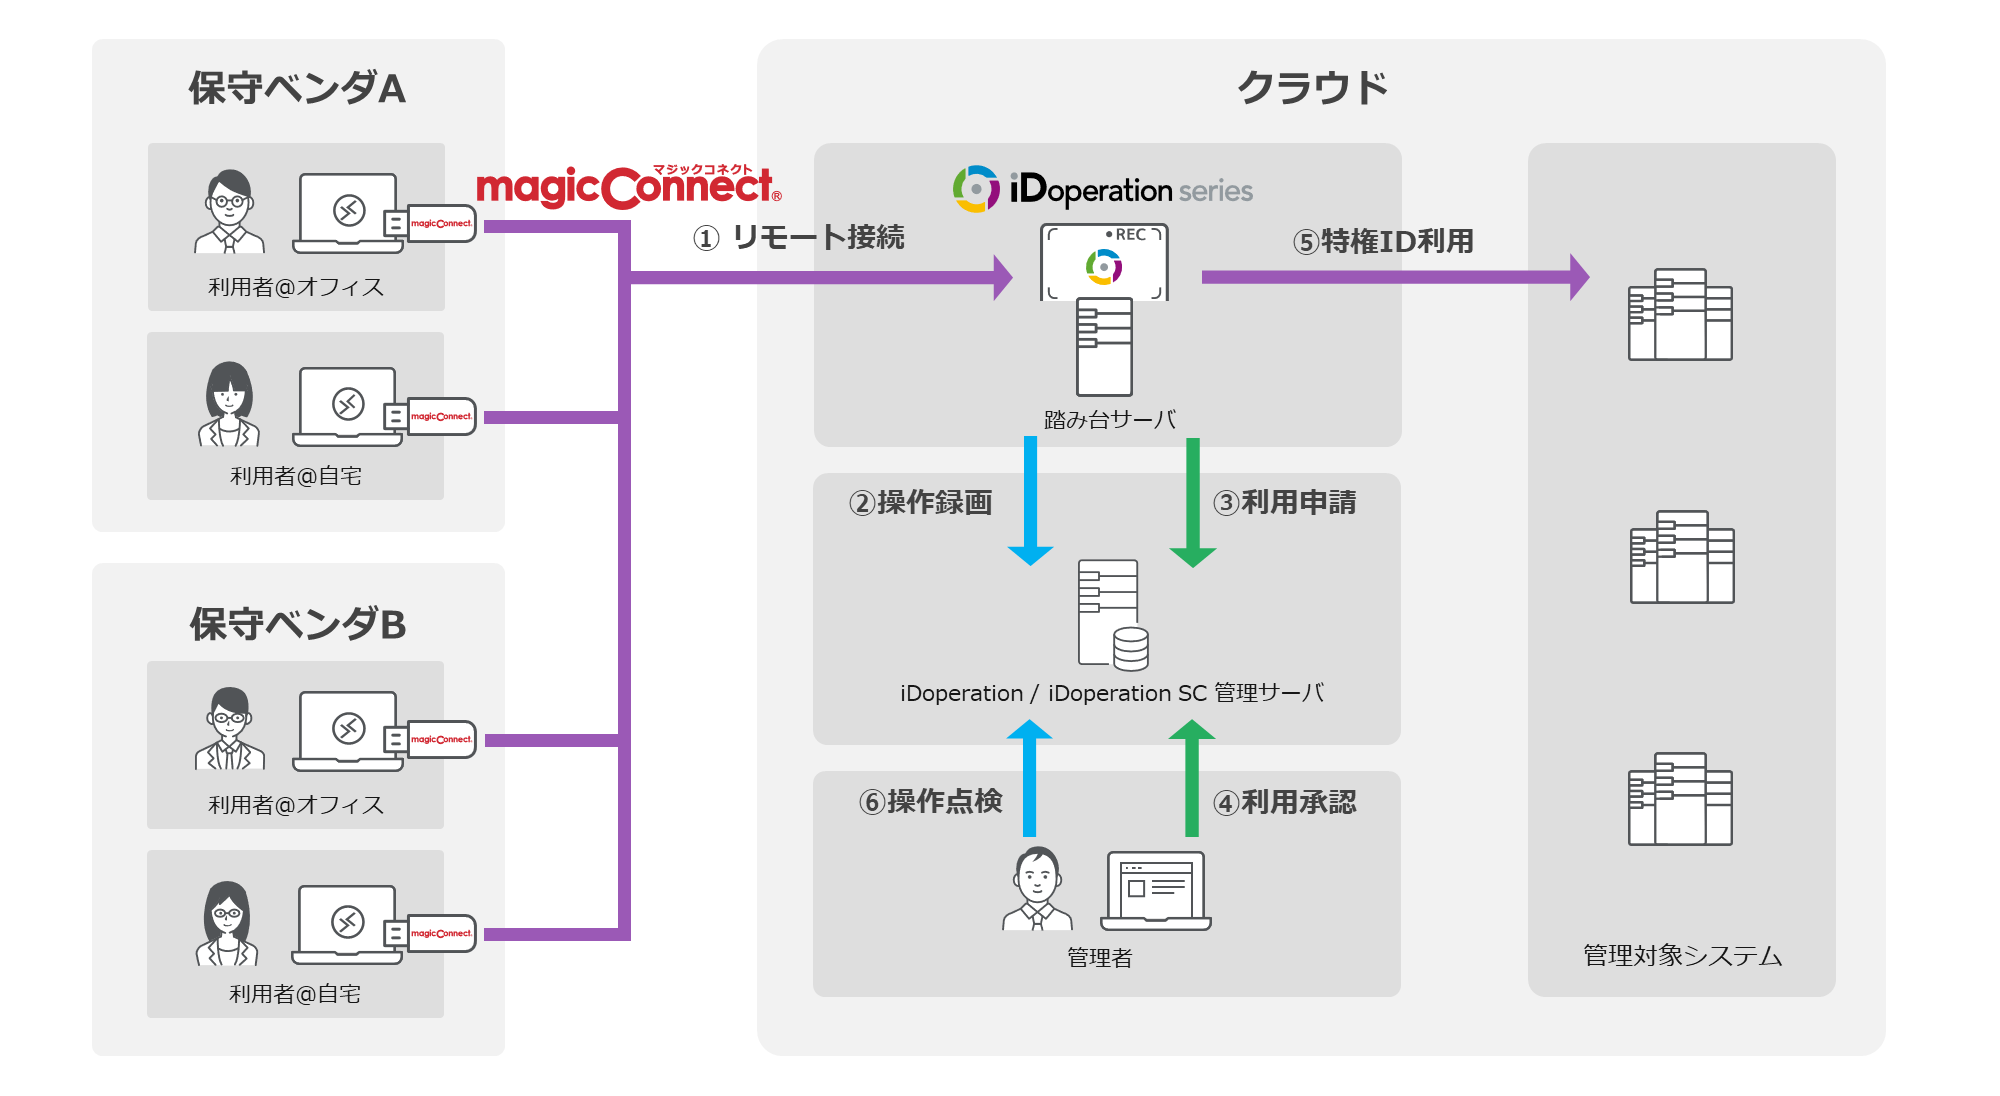 マジックコネクト、iDoperation、iDoperation SCを使ってサーバにログインしてシステムを運用・保守する流れ